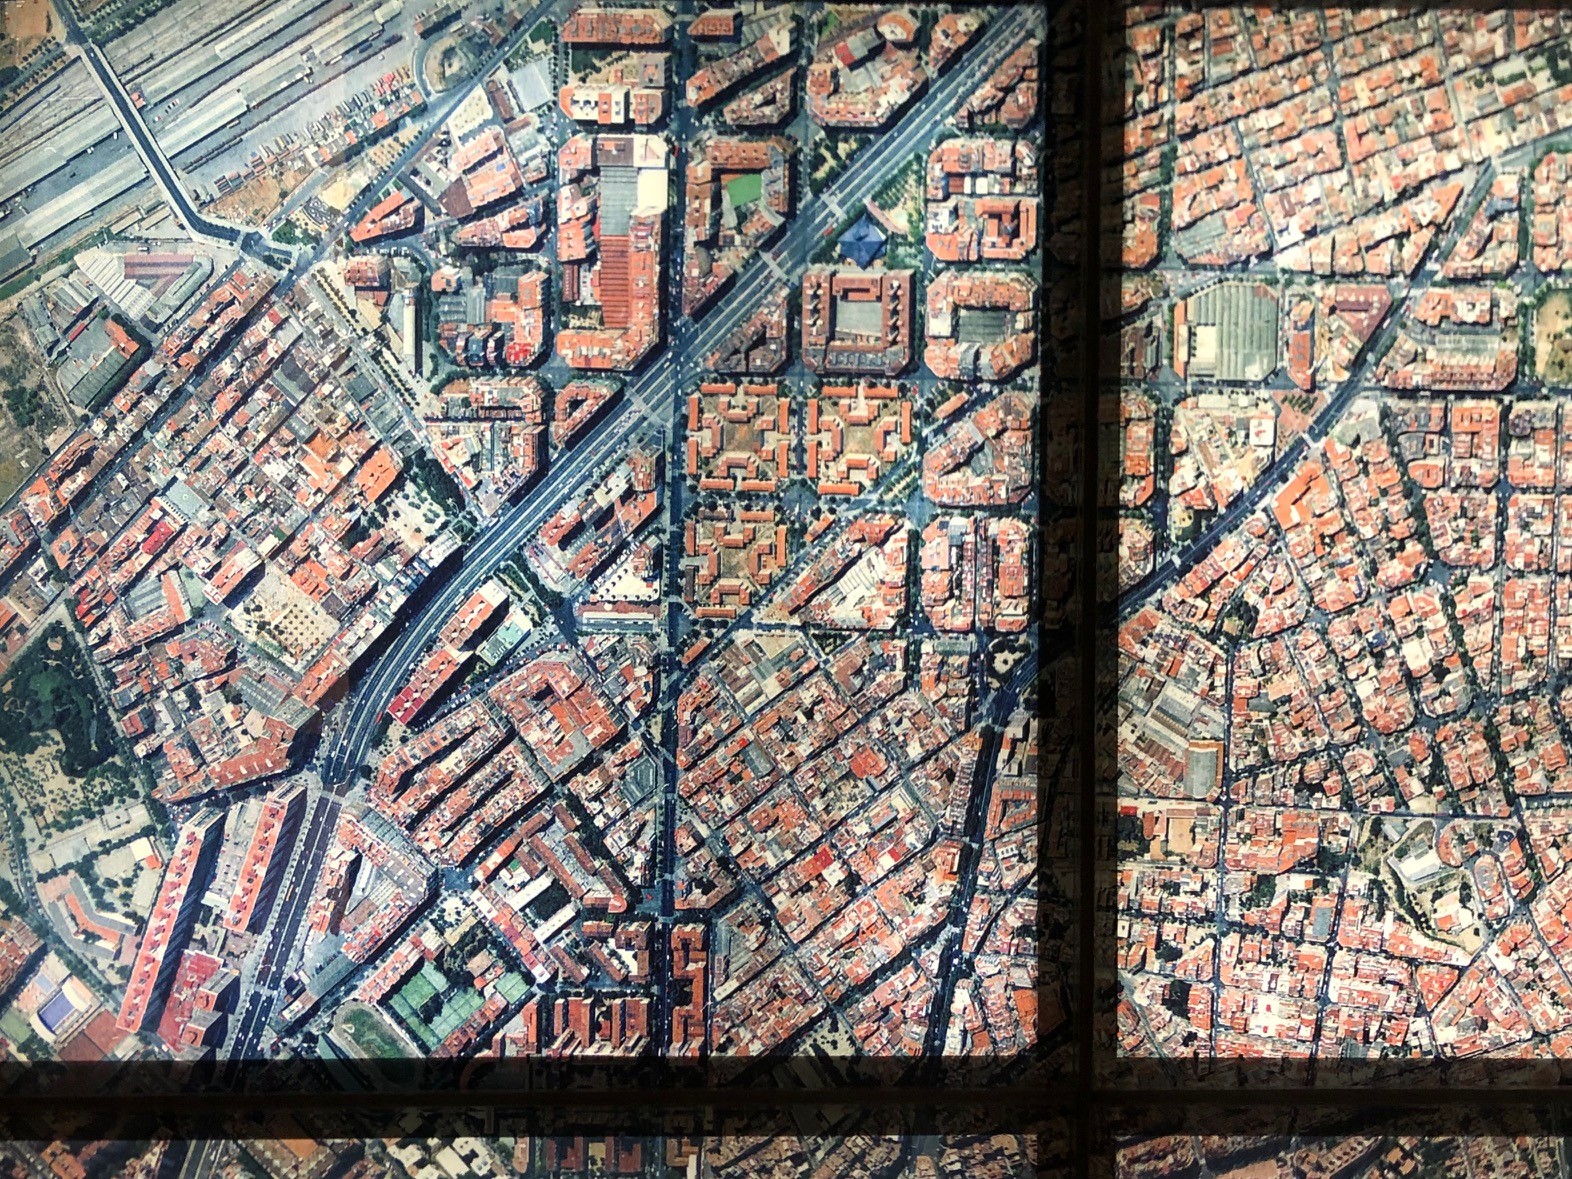 “Barcellona: lo spazio pubblico come leva di innovazione urbana”